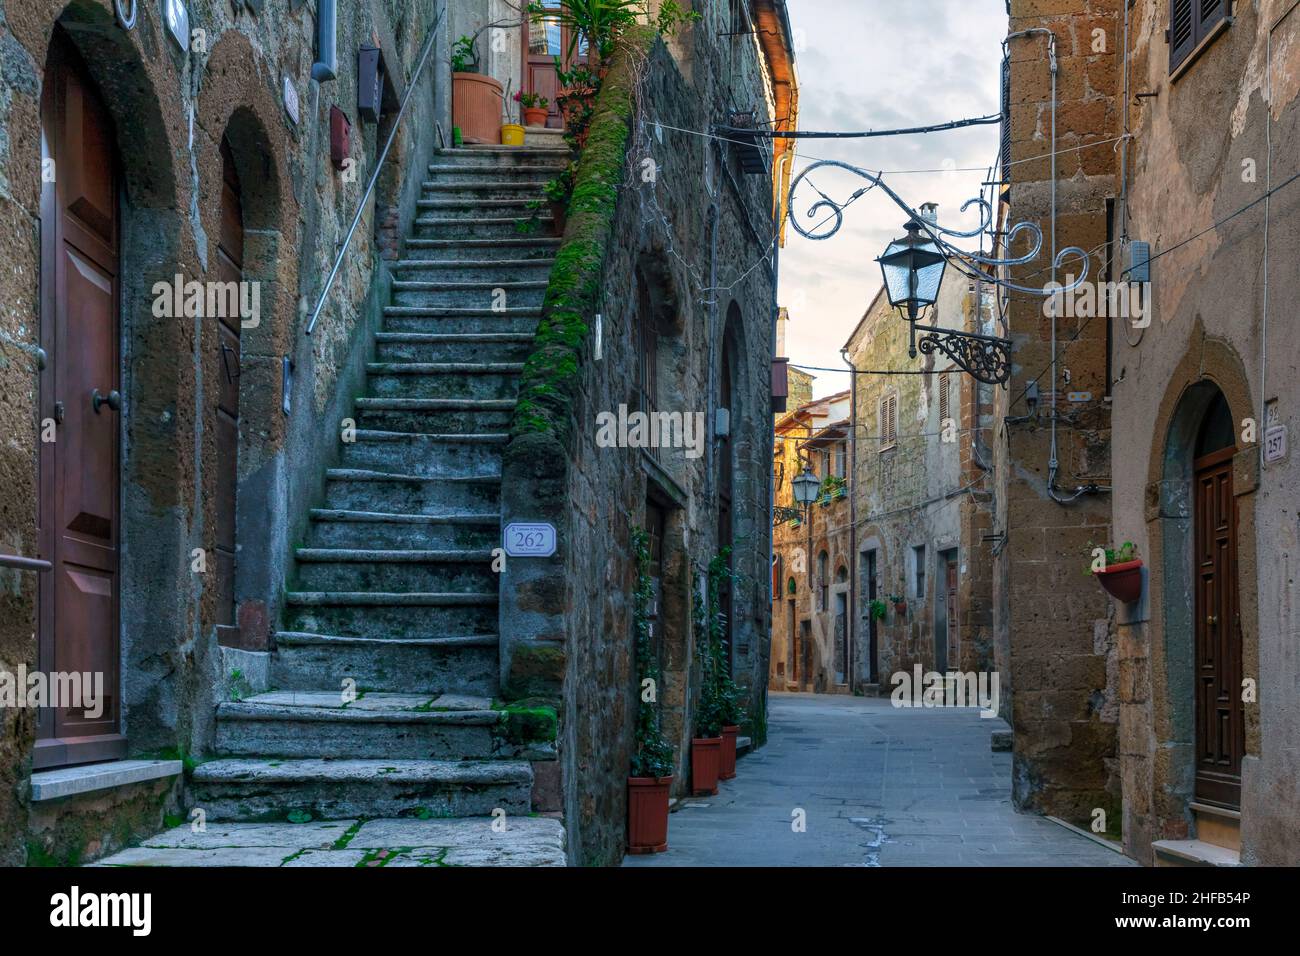 Pitigliano, Grosseto, Tuscany, Italy Stock Photo